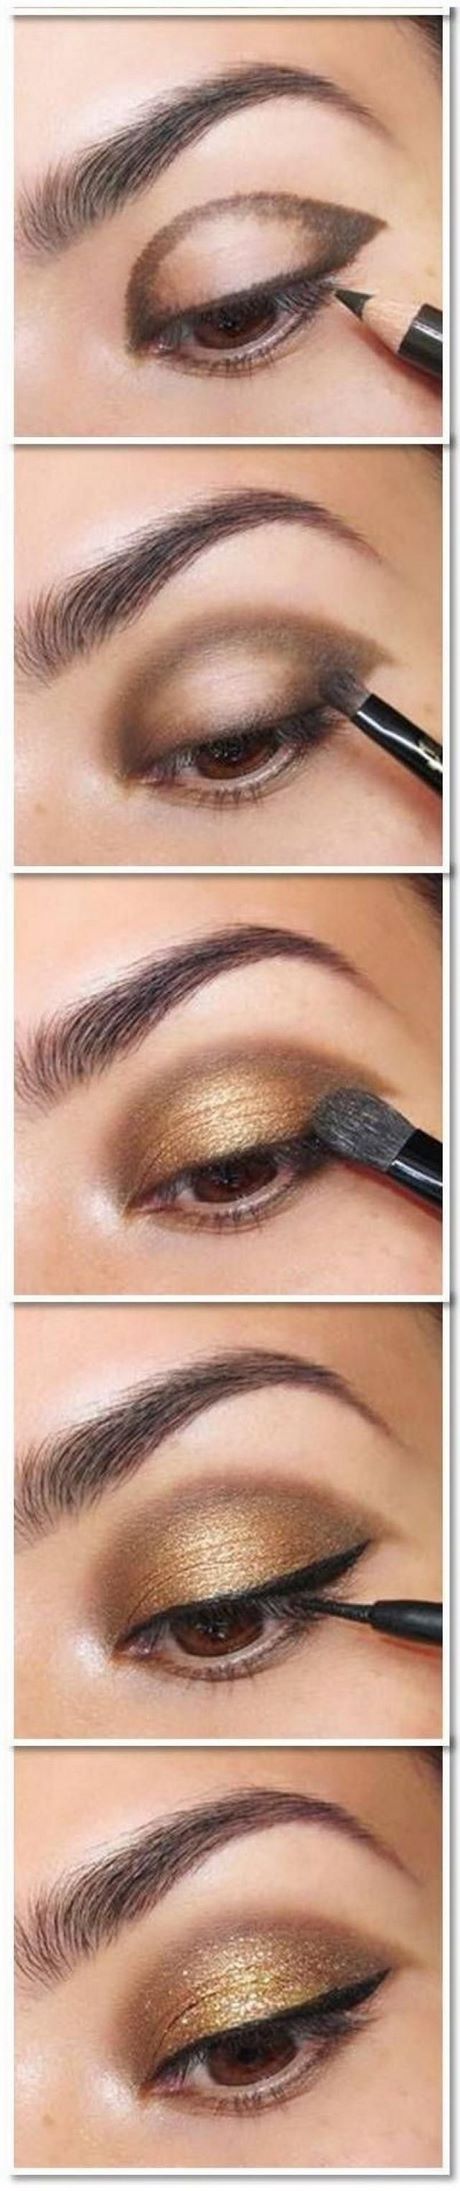 eyeliner-makeup-tutorial-dailymotion-34_3 Eyeliner make-up tutorial dailymotion